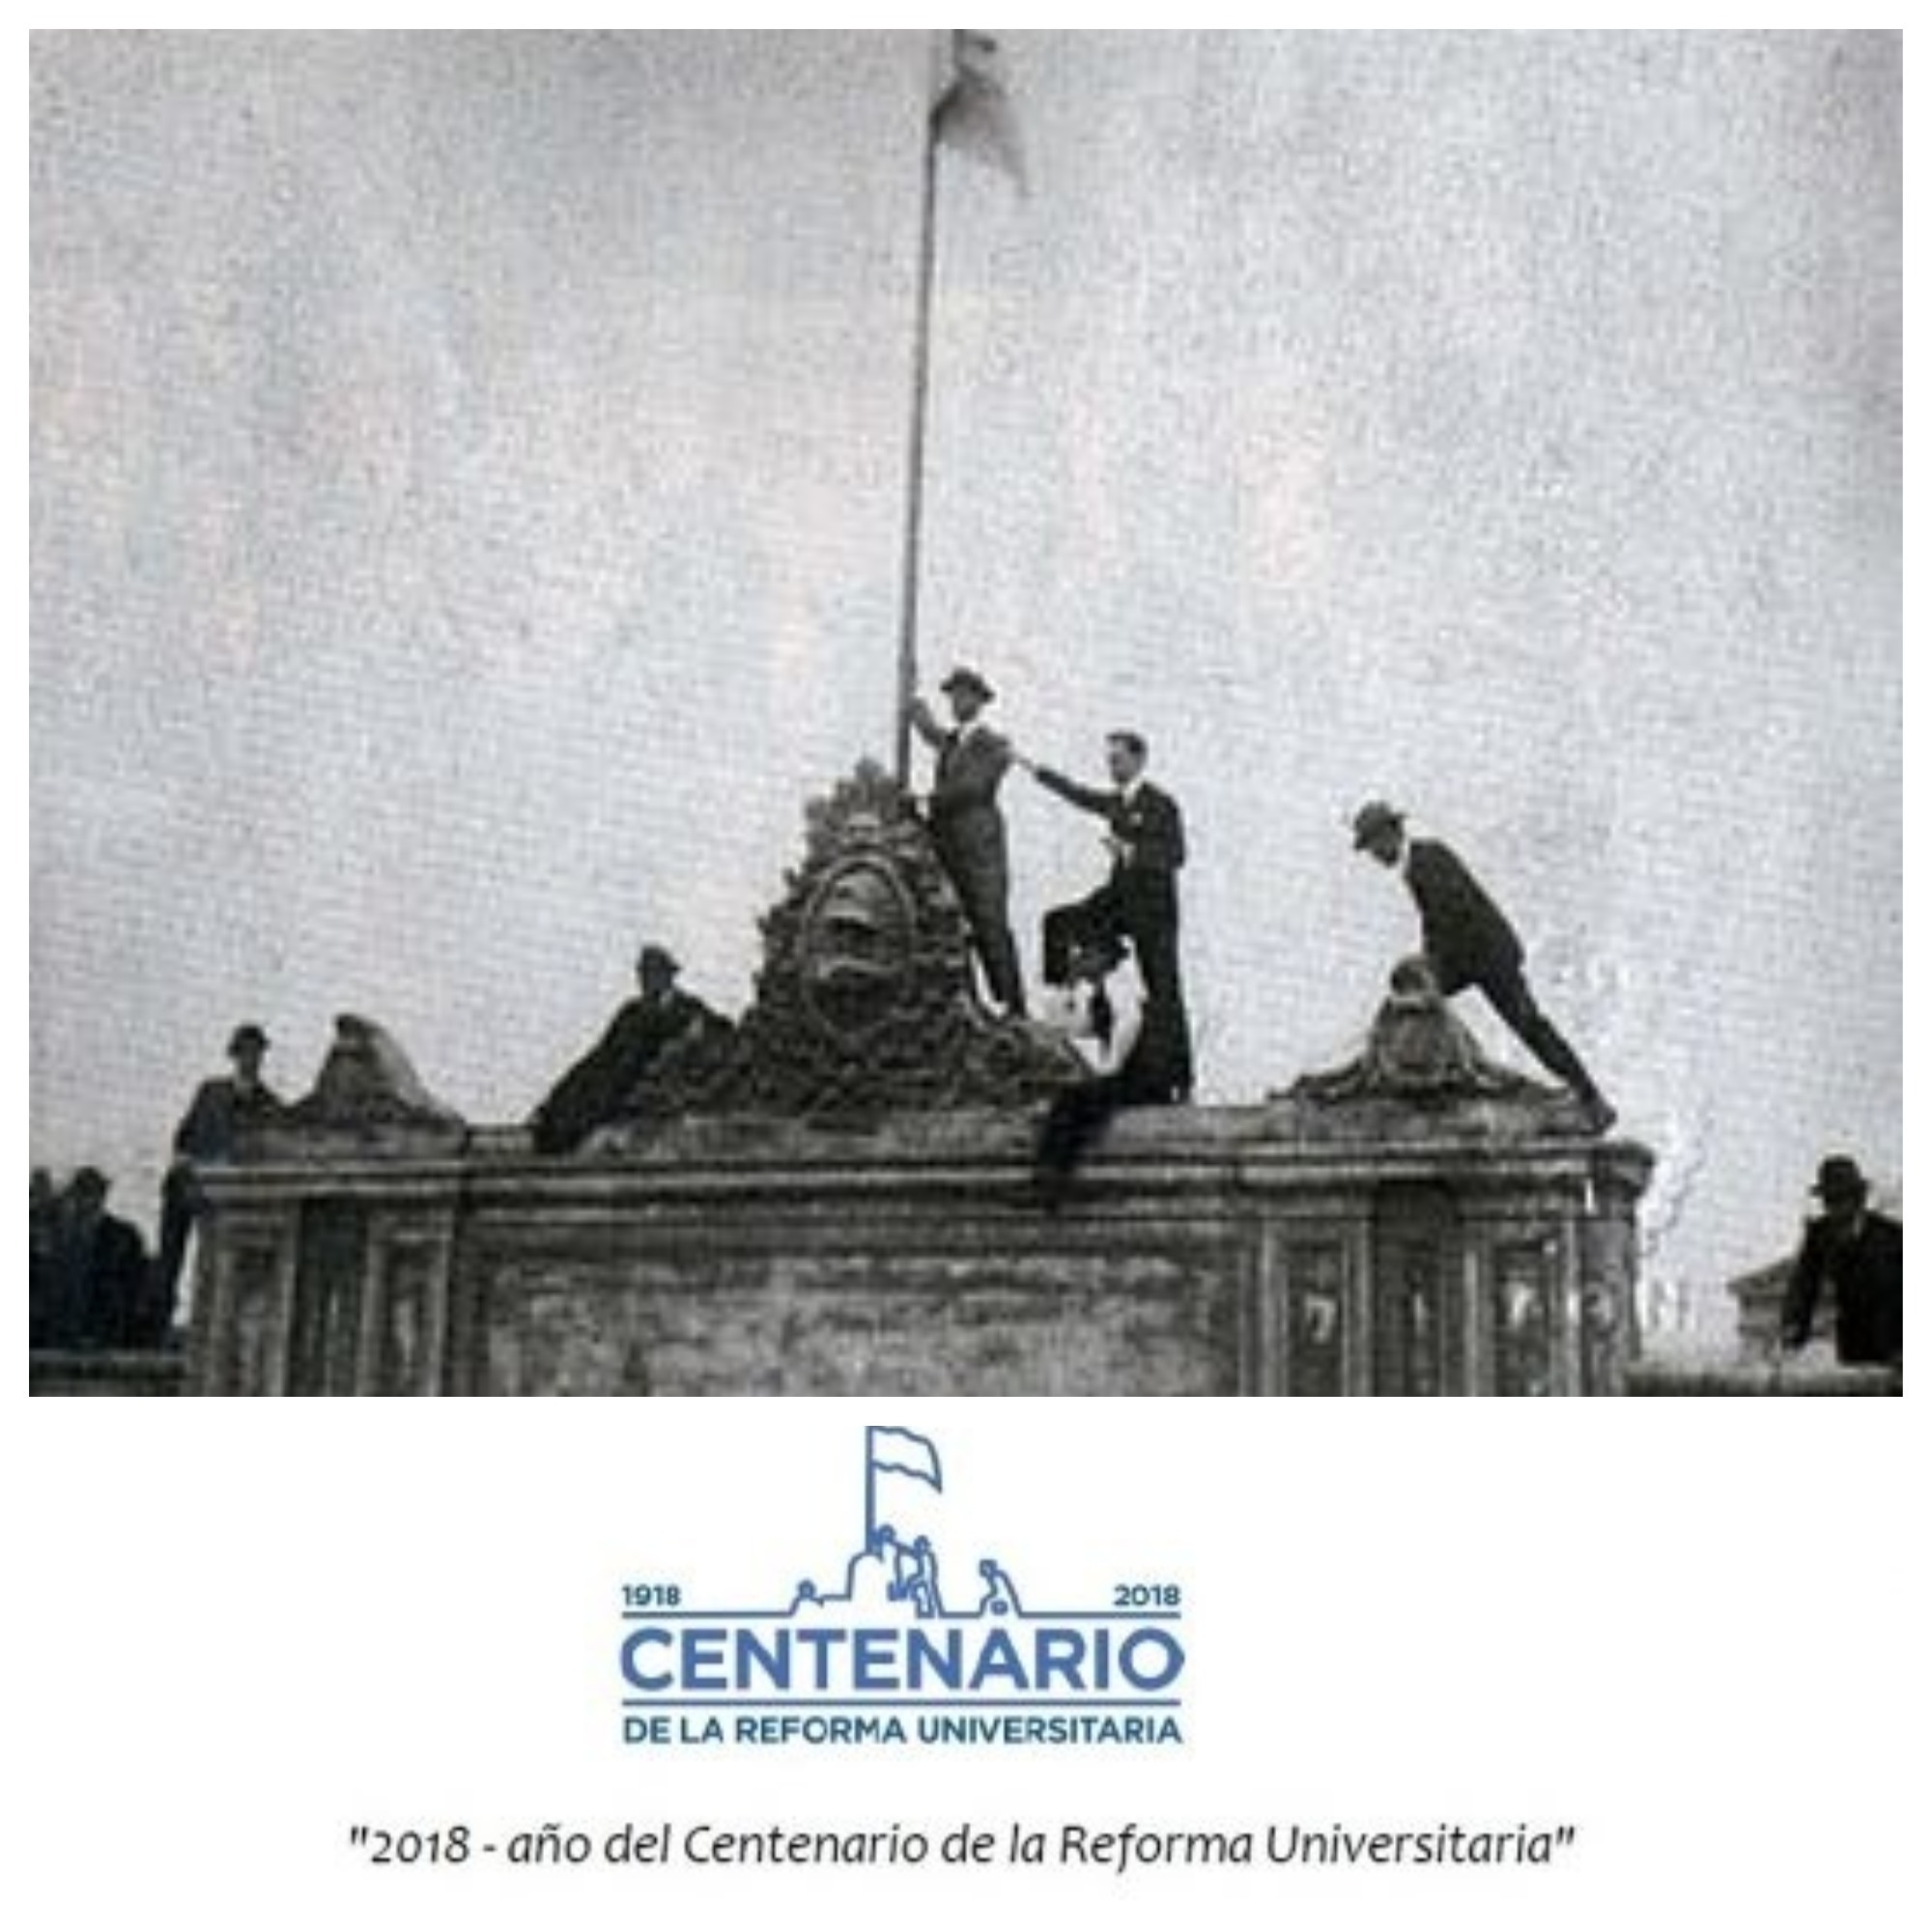 Nos sumamos con orgullo a la celebración del Centenario de la Reforma Universitaria